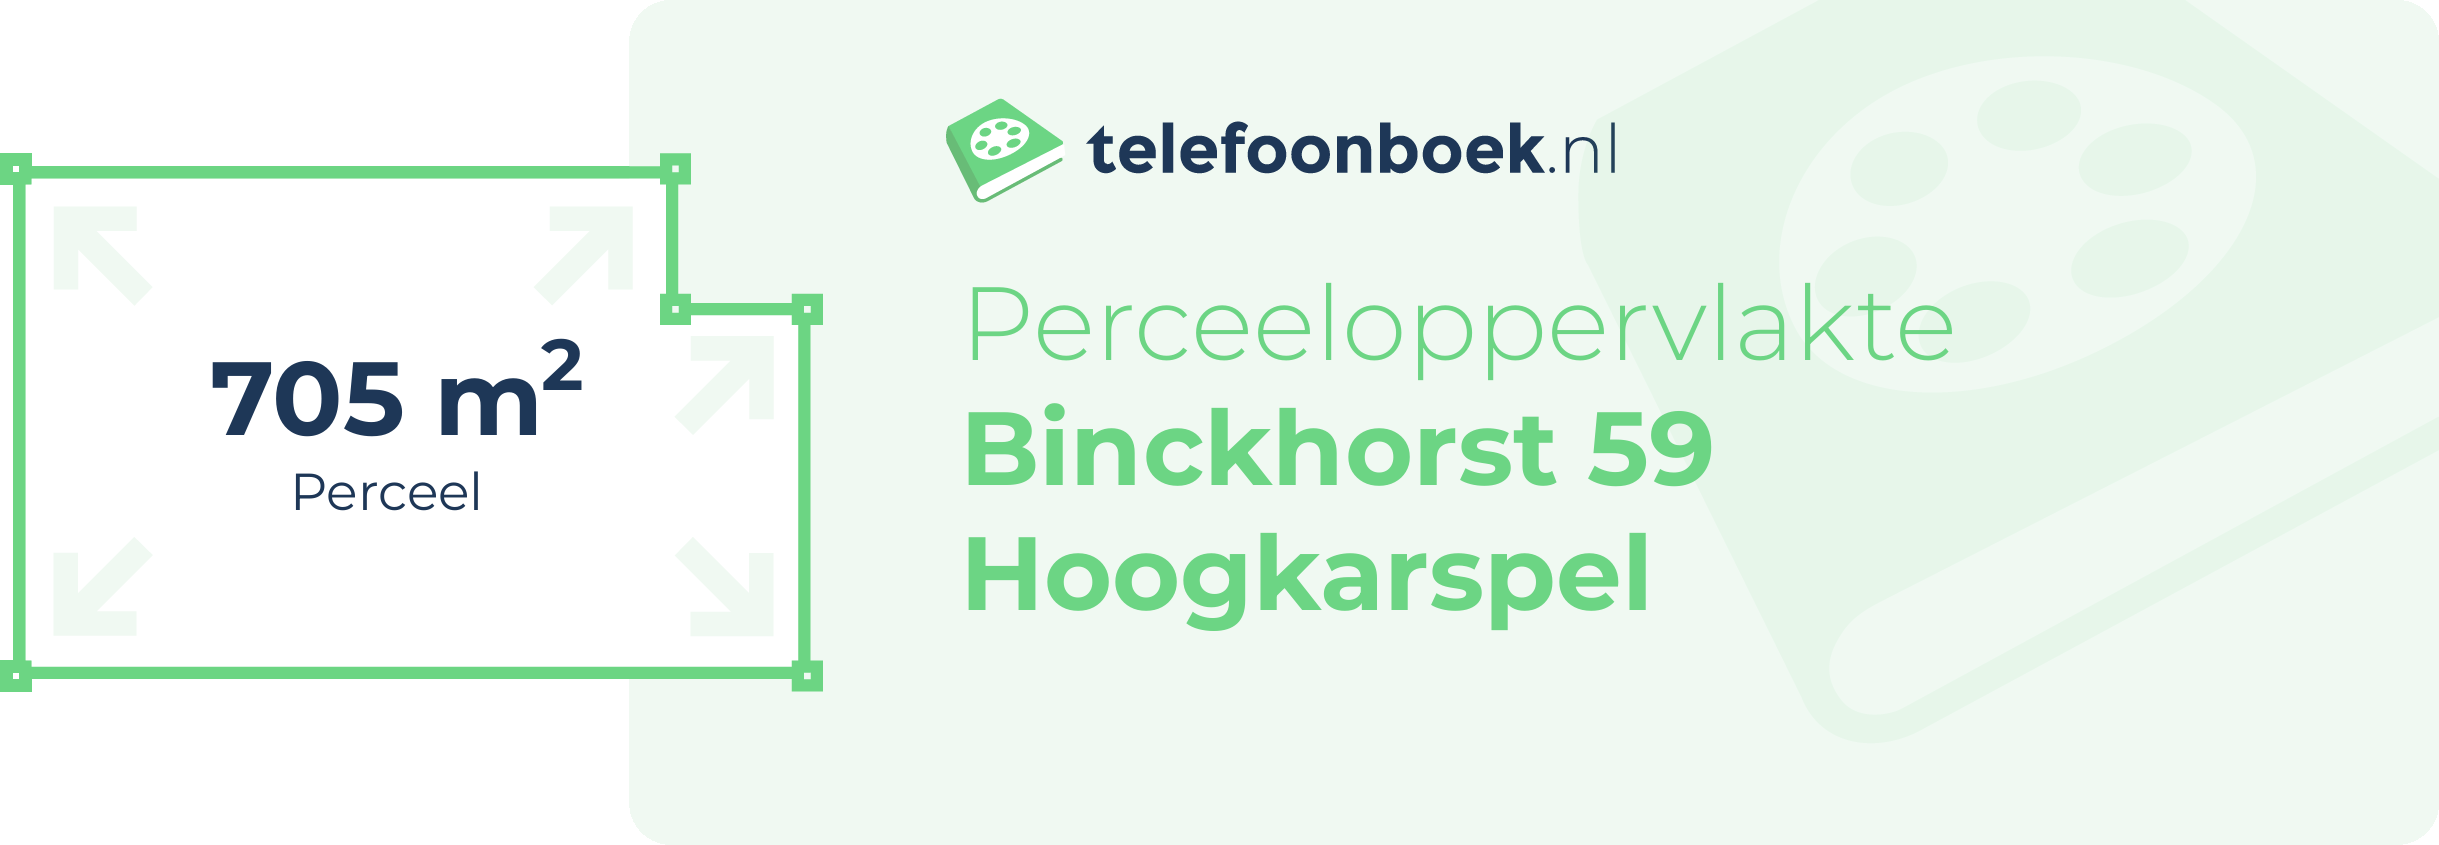 Perceeloppervlakte Binckhorst 59 Hoogkarspel